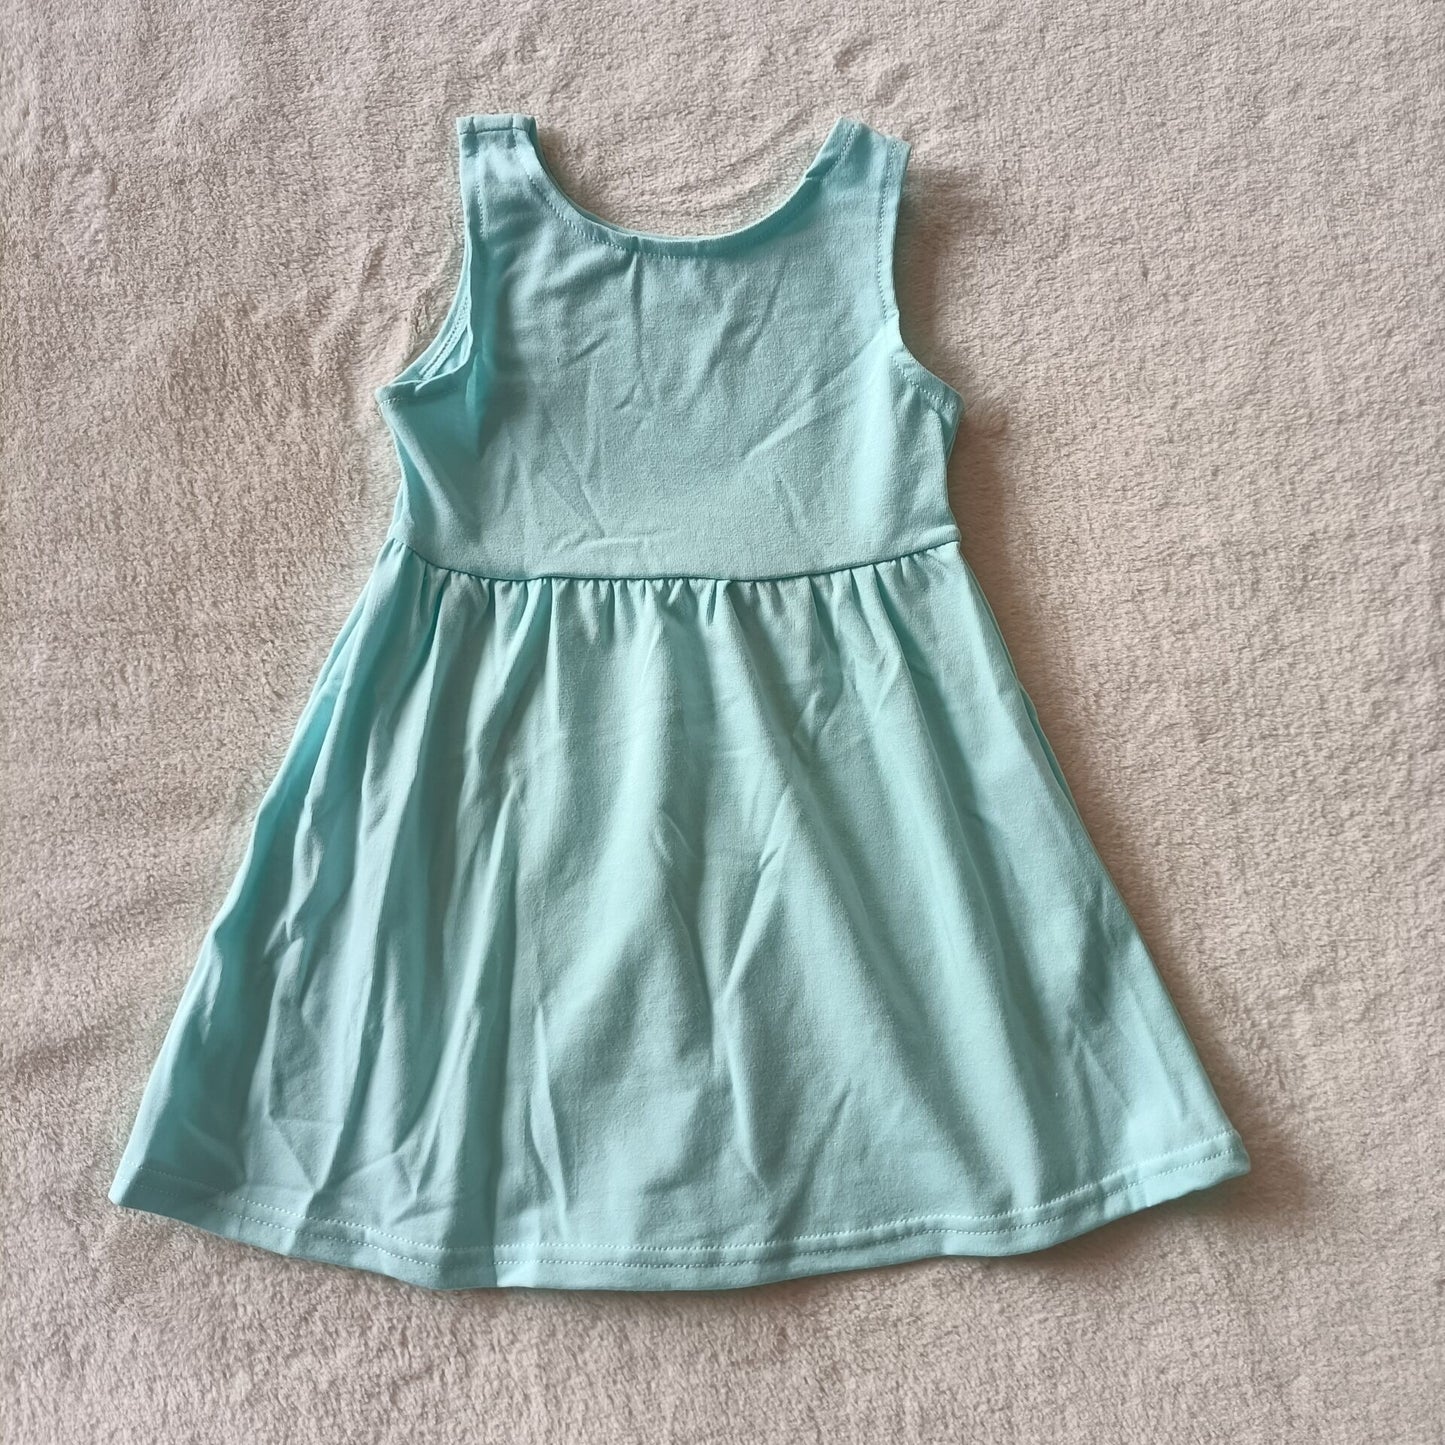 Baby girls blue sleeveless knee length dresses